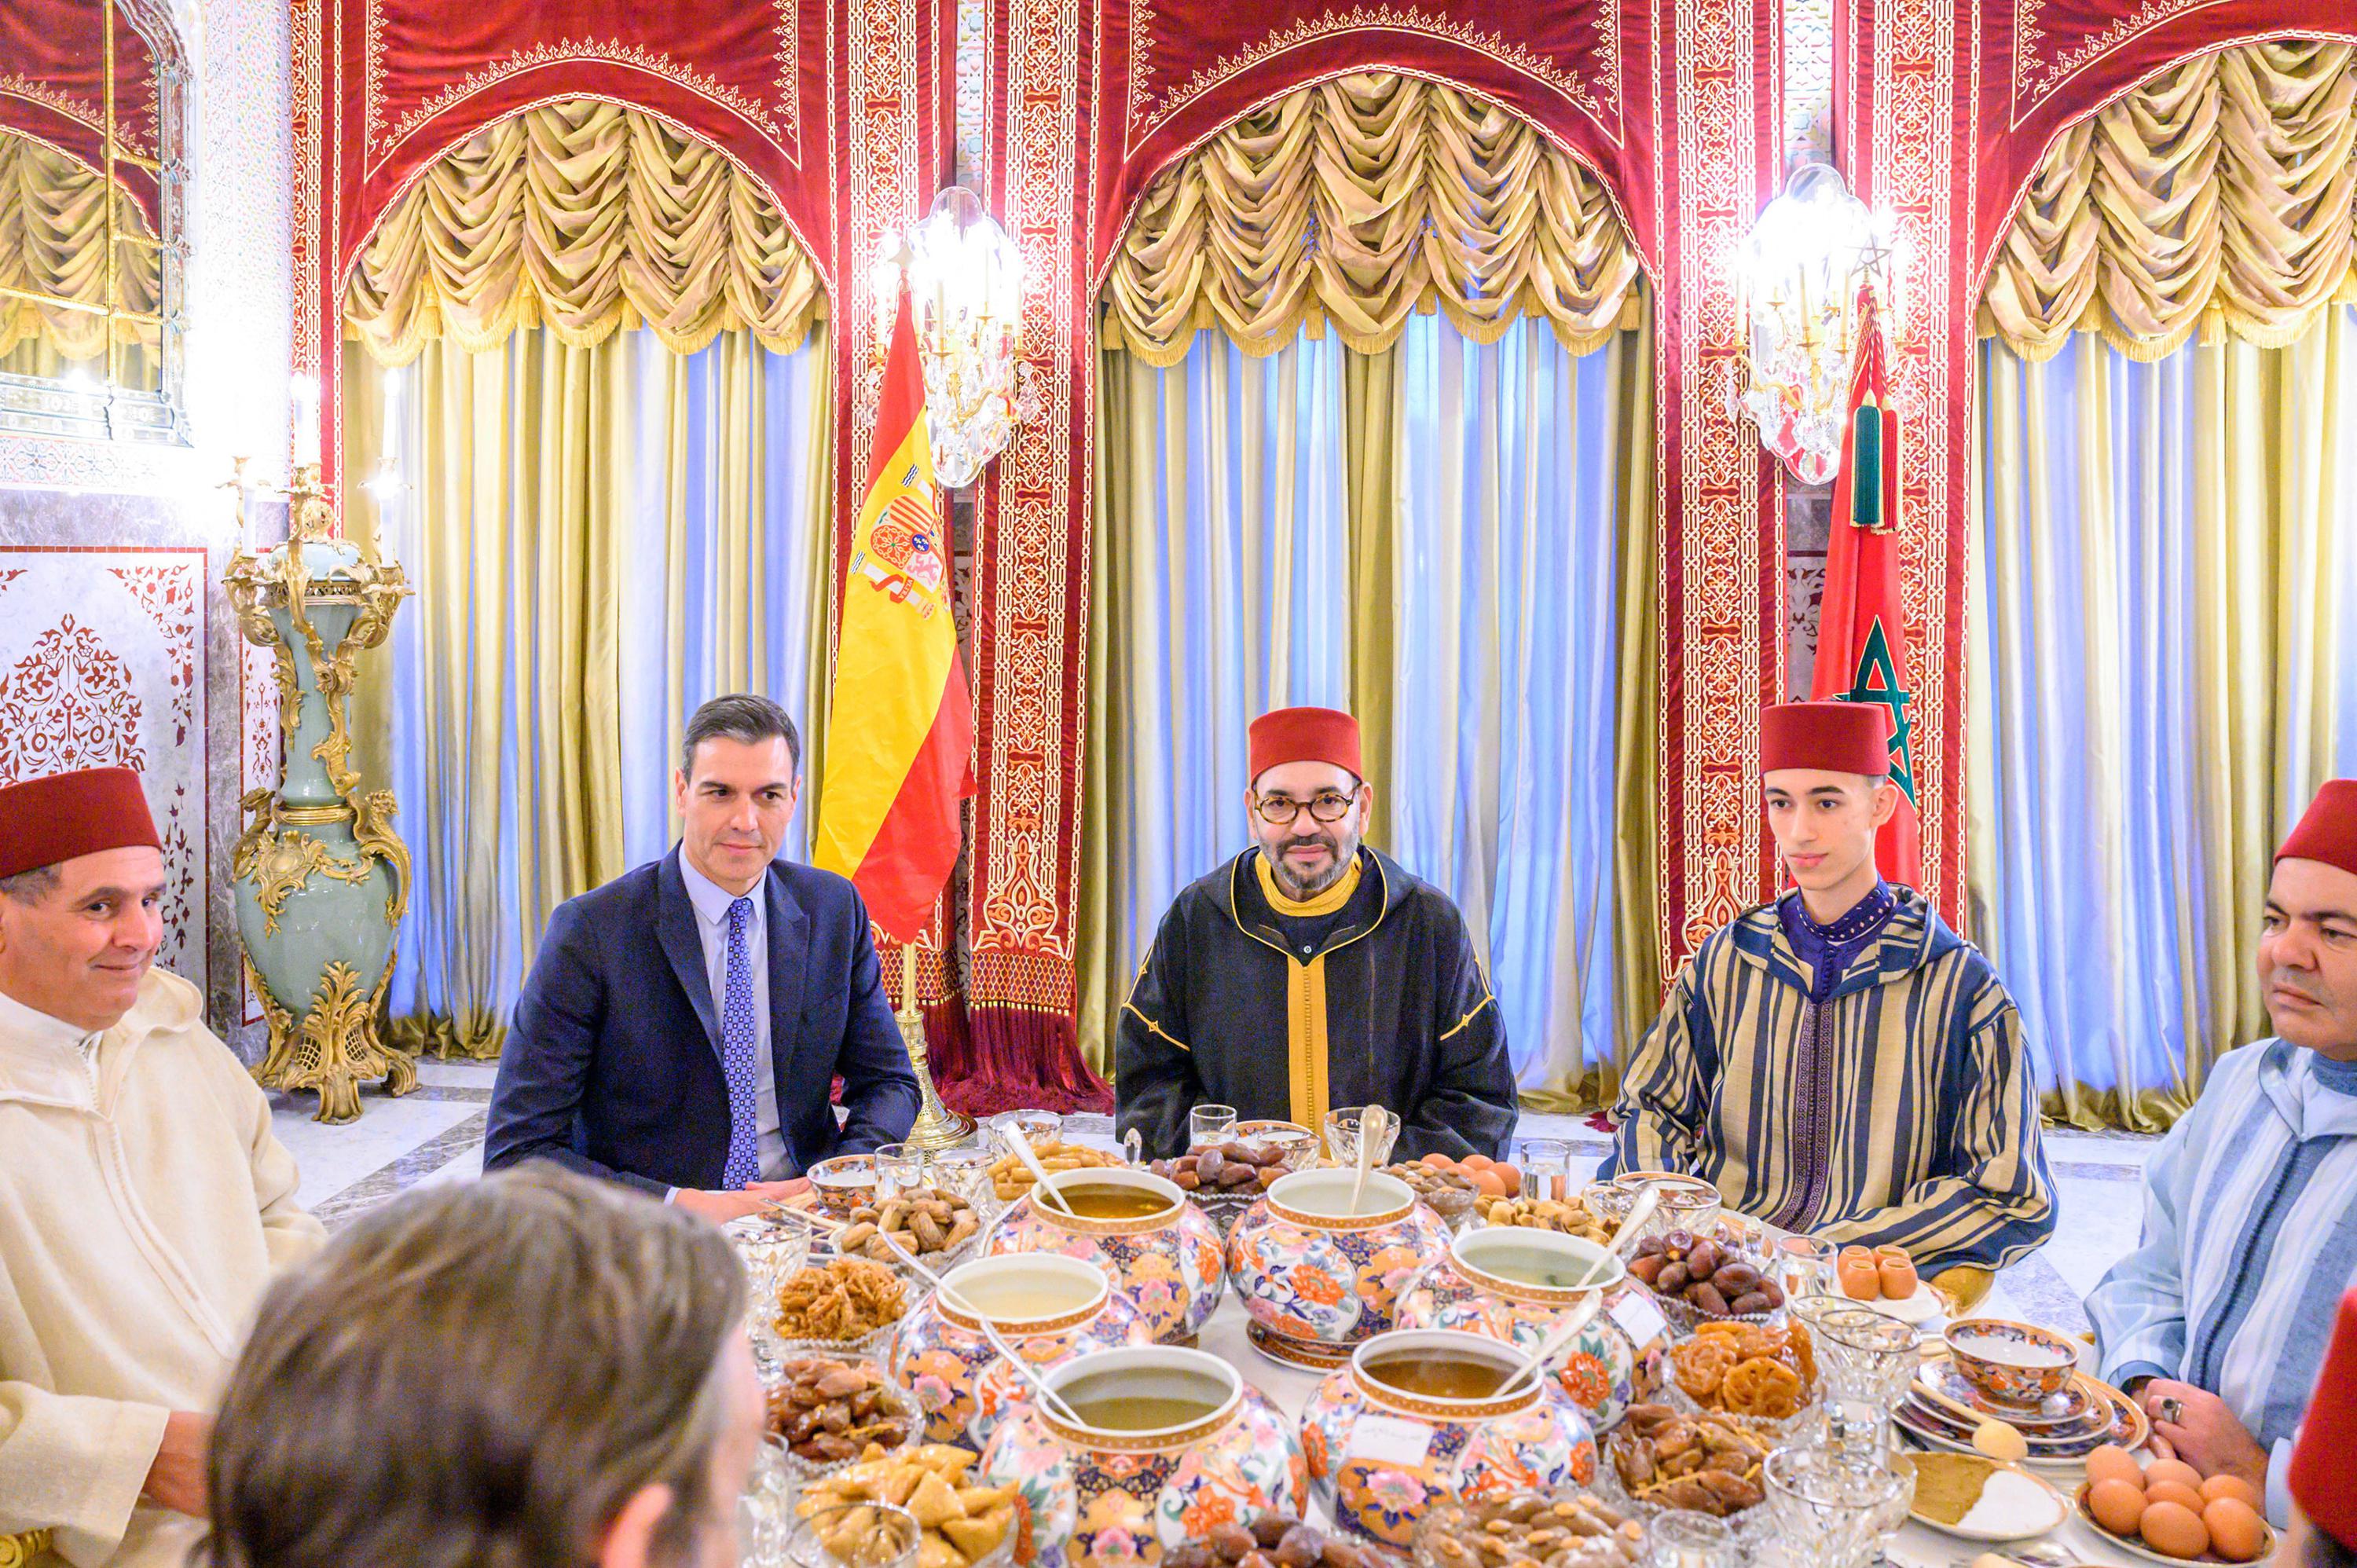 En esta foto proporcionada por el Palacio Real, el rey marroquí Mohammed VI, en el centro, el primer ministro español Pedro Sánchez, segundo a la izquierda, el príncipe heredero Moulay Hassan, segundo a la derecha, el príncipe Moulay Rachid, hermano del rey, a la derecha, y el primer ministro marroquí Aziz Akhannouch, a la izquierda, posan antes de una comida Iftar, la cena en la que los musulmanes terminan su ayuno diario de Ramadán al atardecer, en la residencia real del rey en Sale, Marruecos, jueves 7 de abril de 2022.